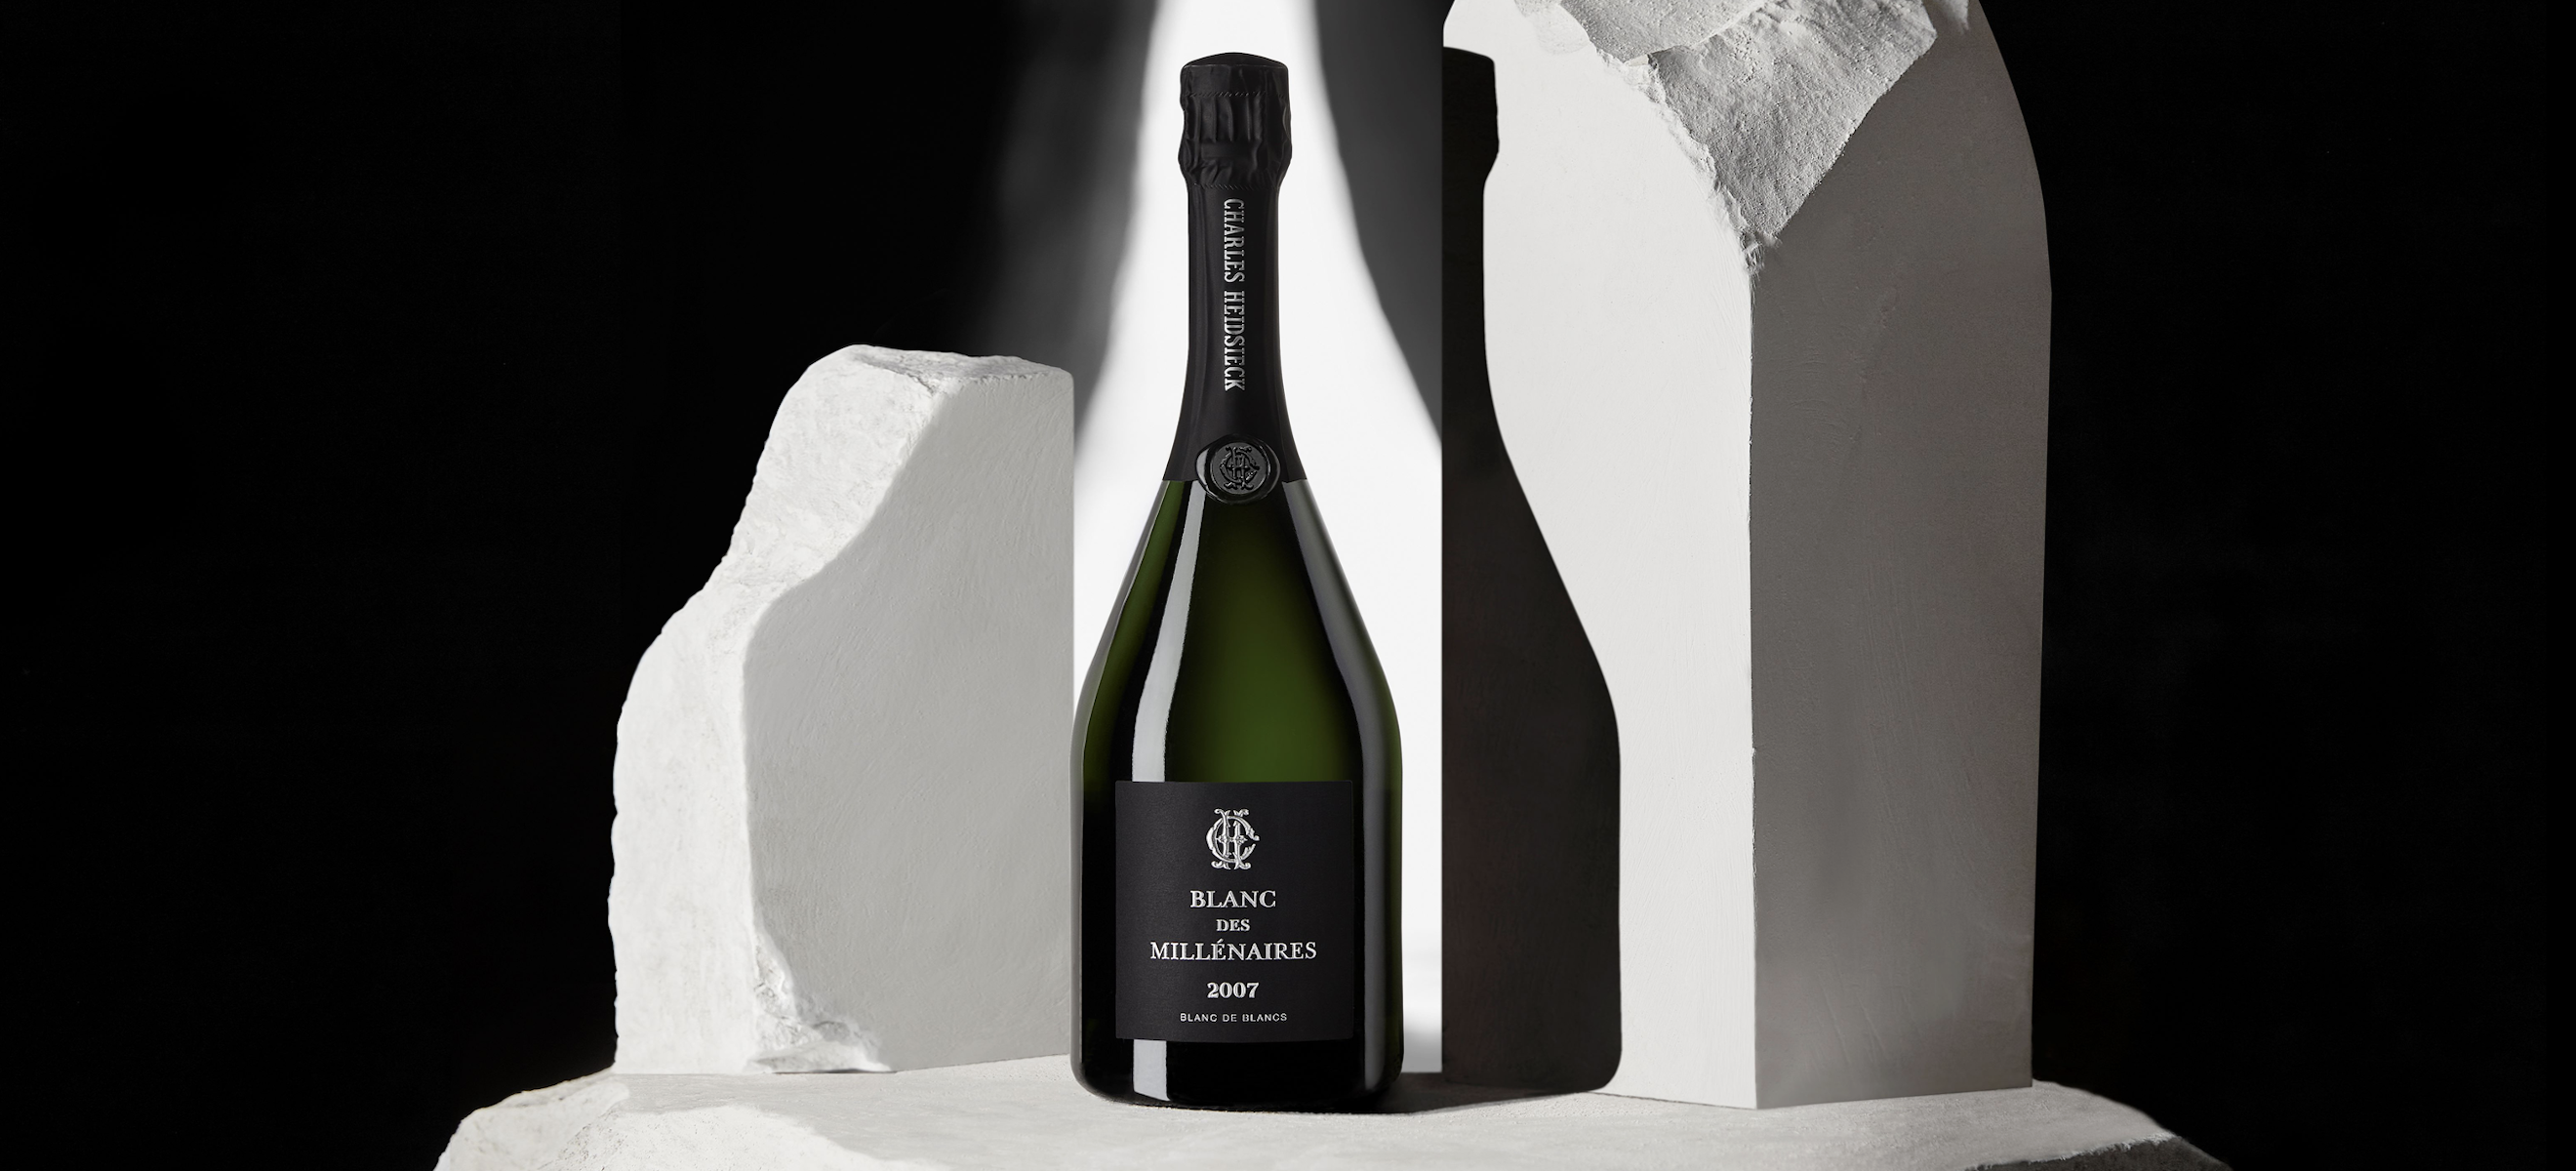 Charles Heidsieck Releases 7th Vintage of Landmark Champagne 